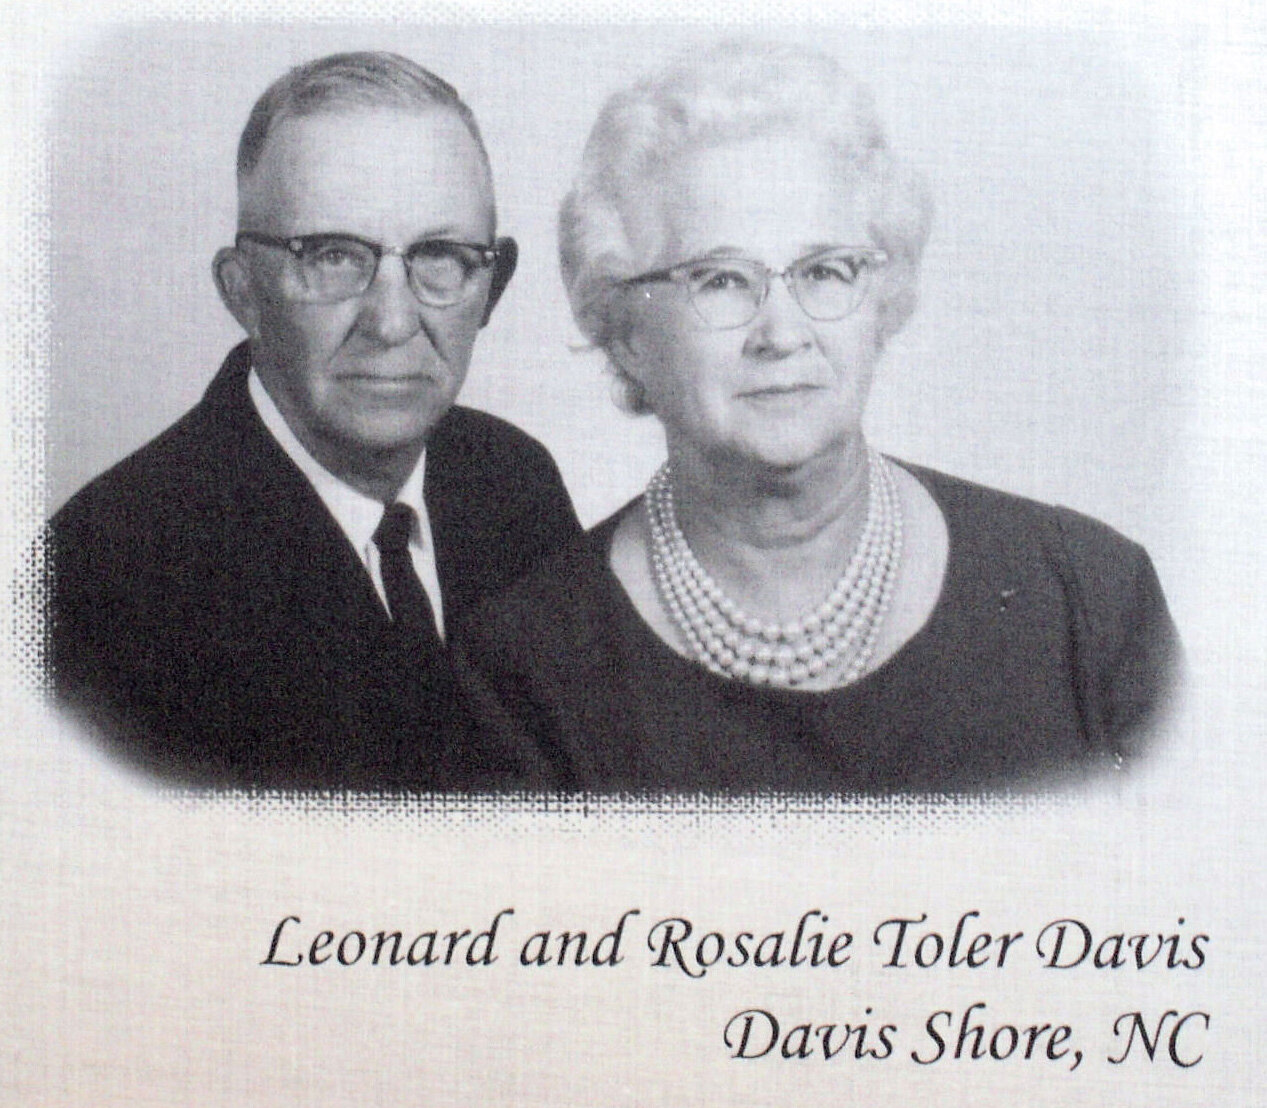 Leonard and Rosalie Davis